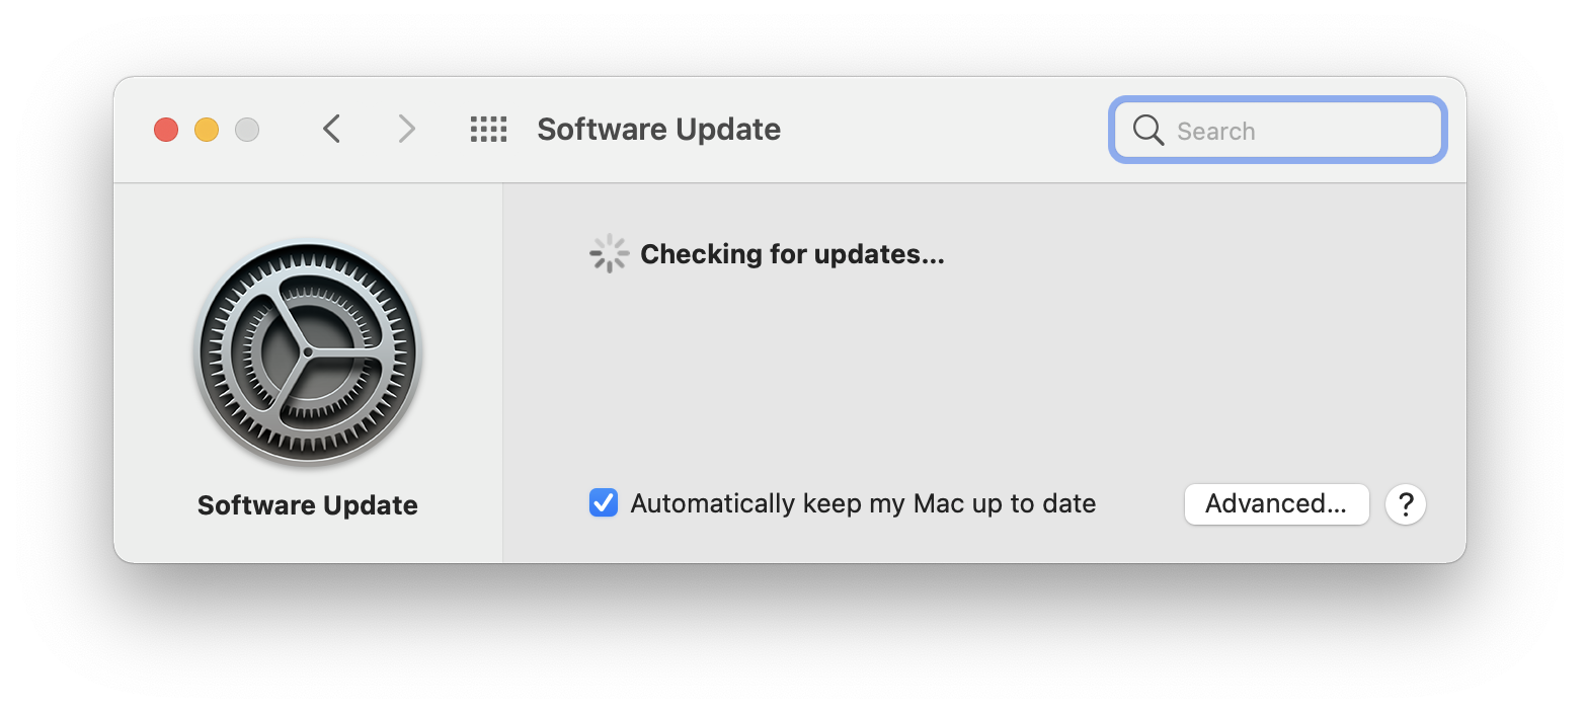 cpu usage low but mac runs slow